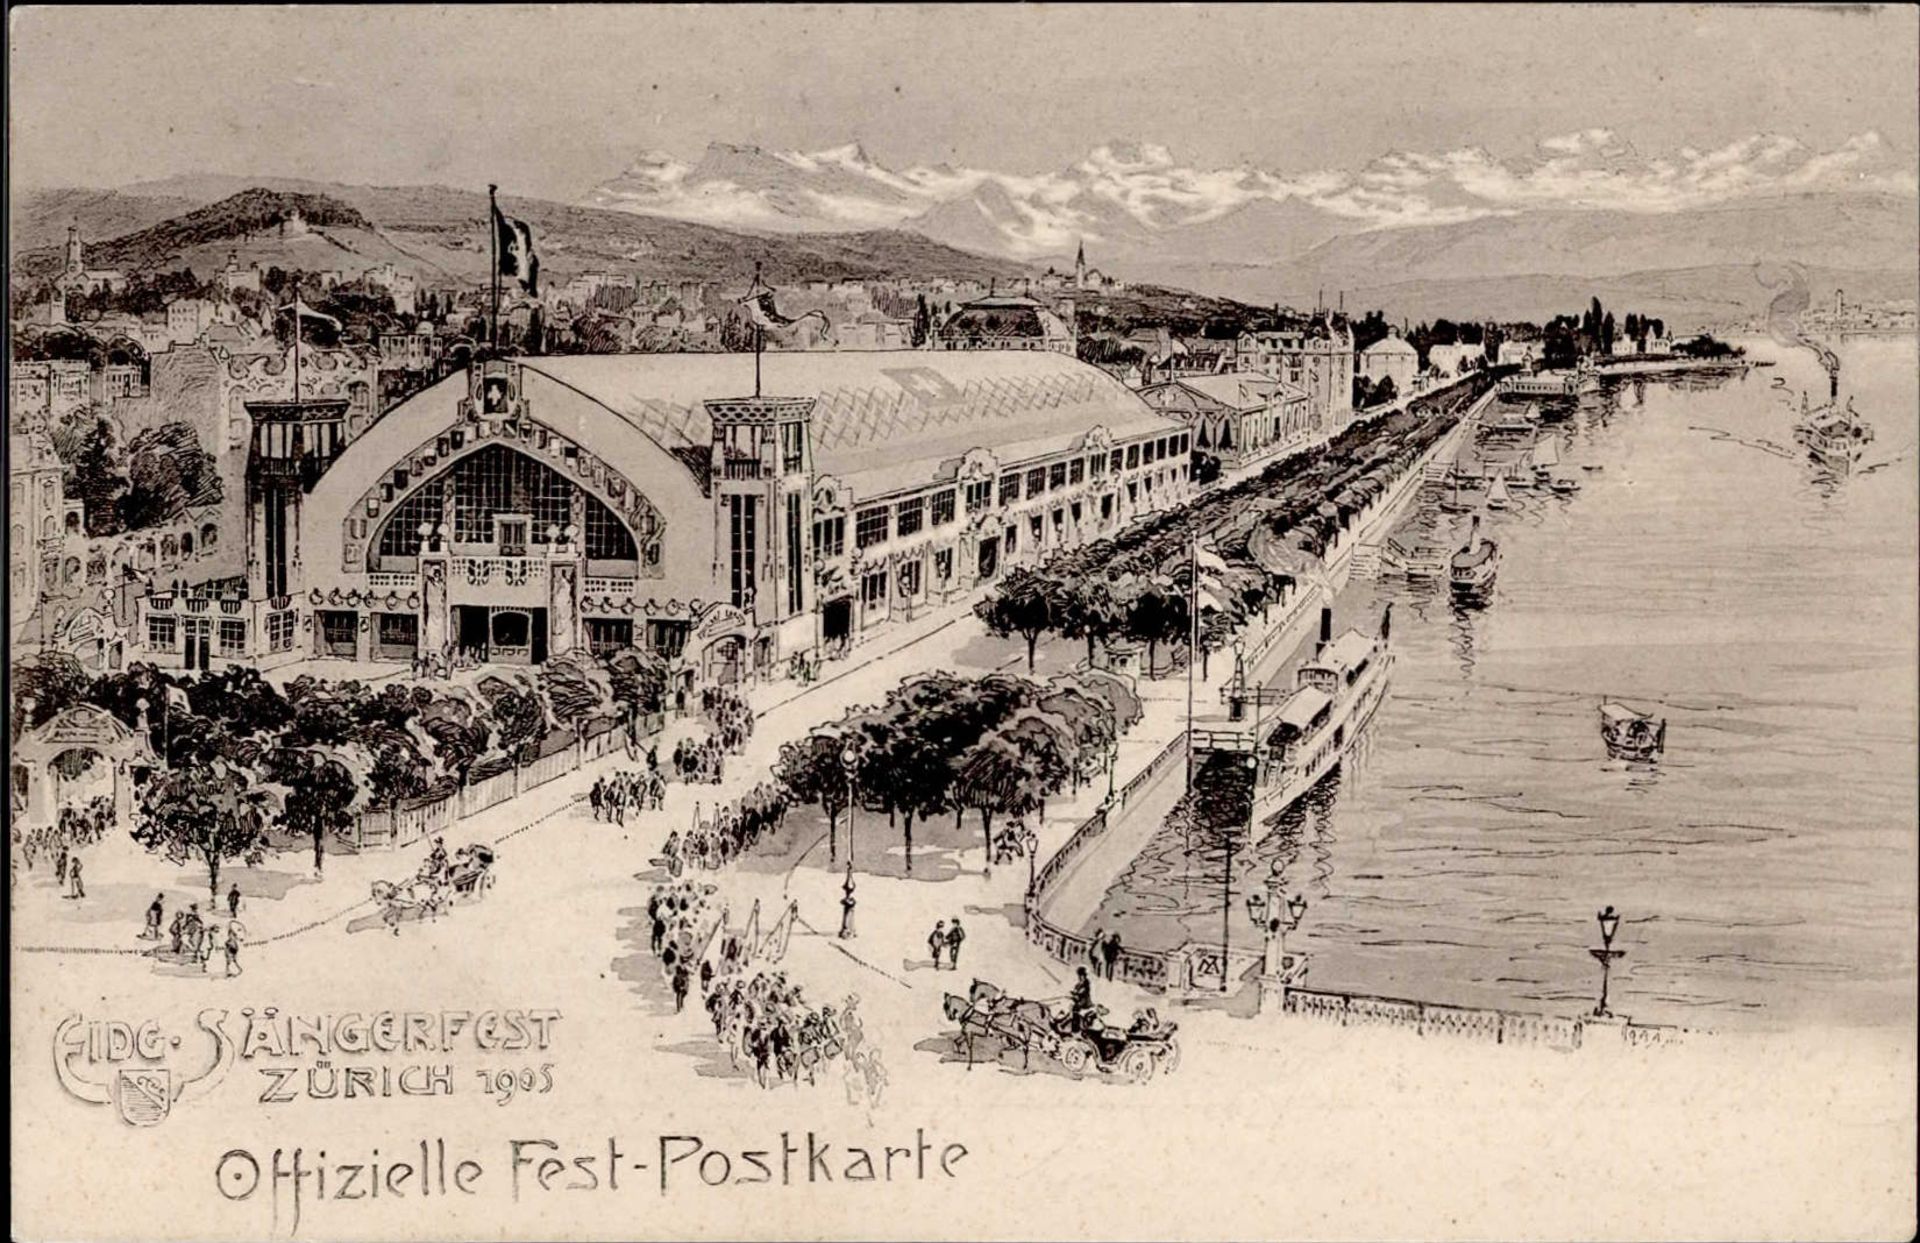 Sängerfest Zürich 1905 I-II